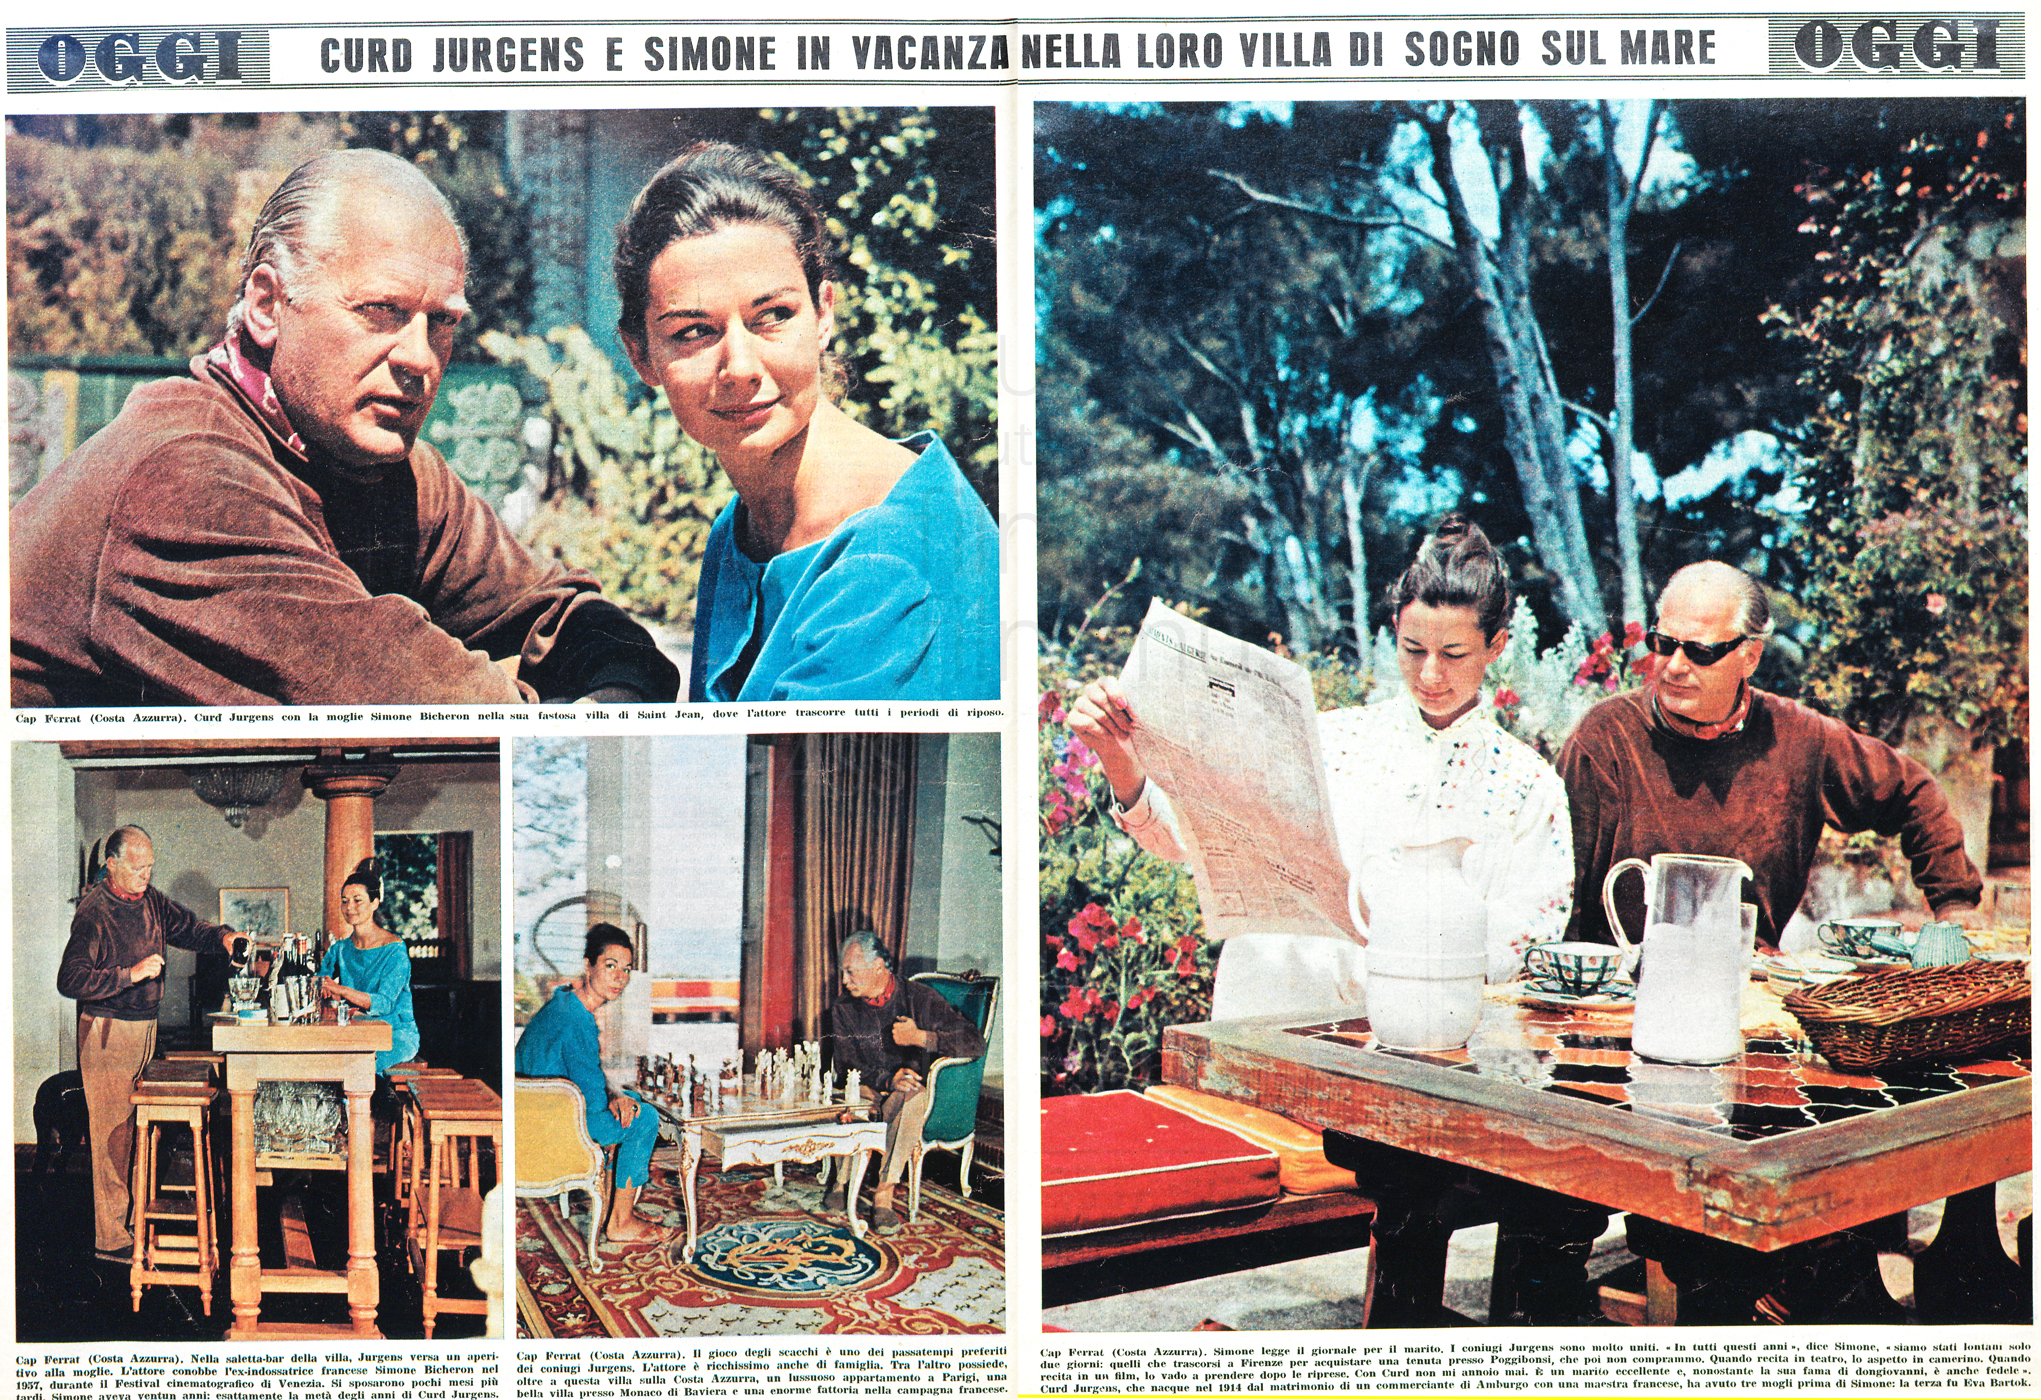 Oggi Illustrato: „Curd Jurgens e Simone in vacanza nella loro villa di sogno sul mare“, Nr. 22, 1964